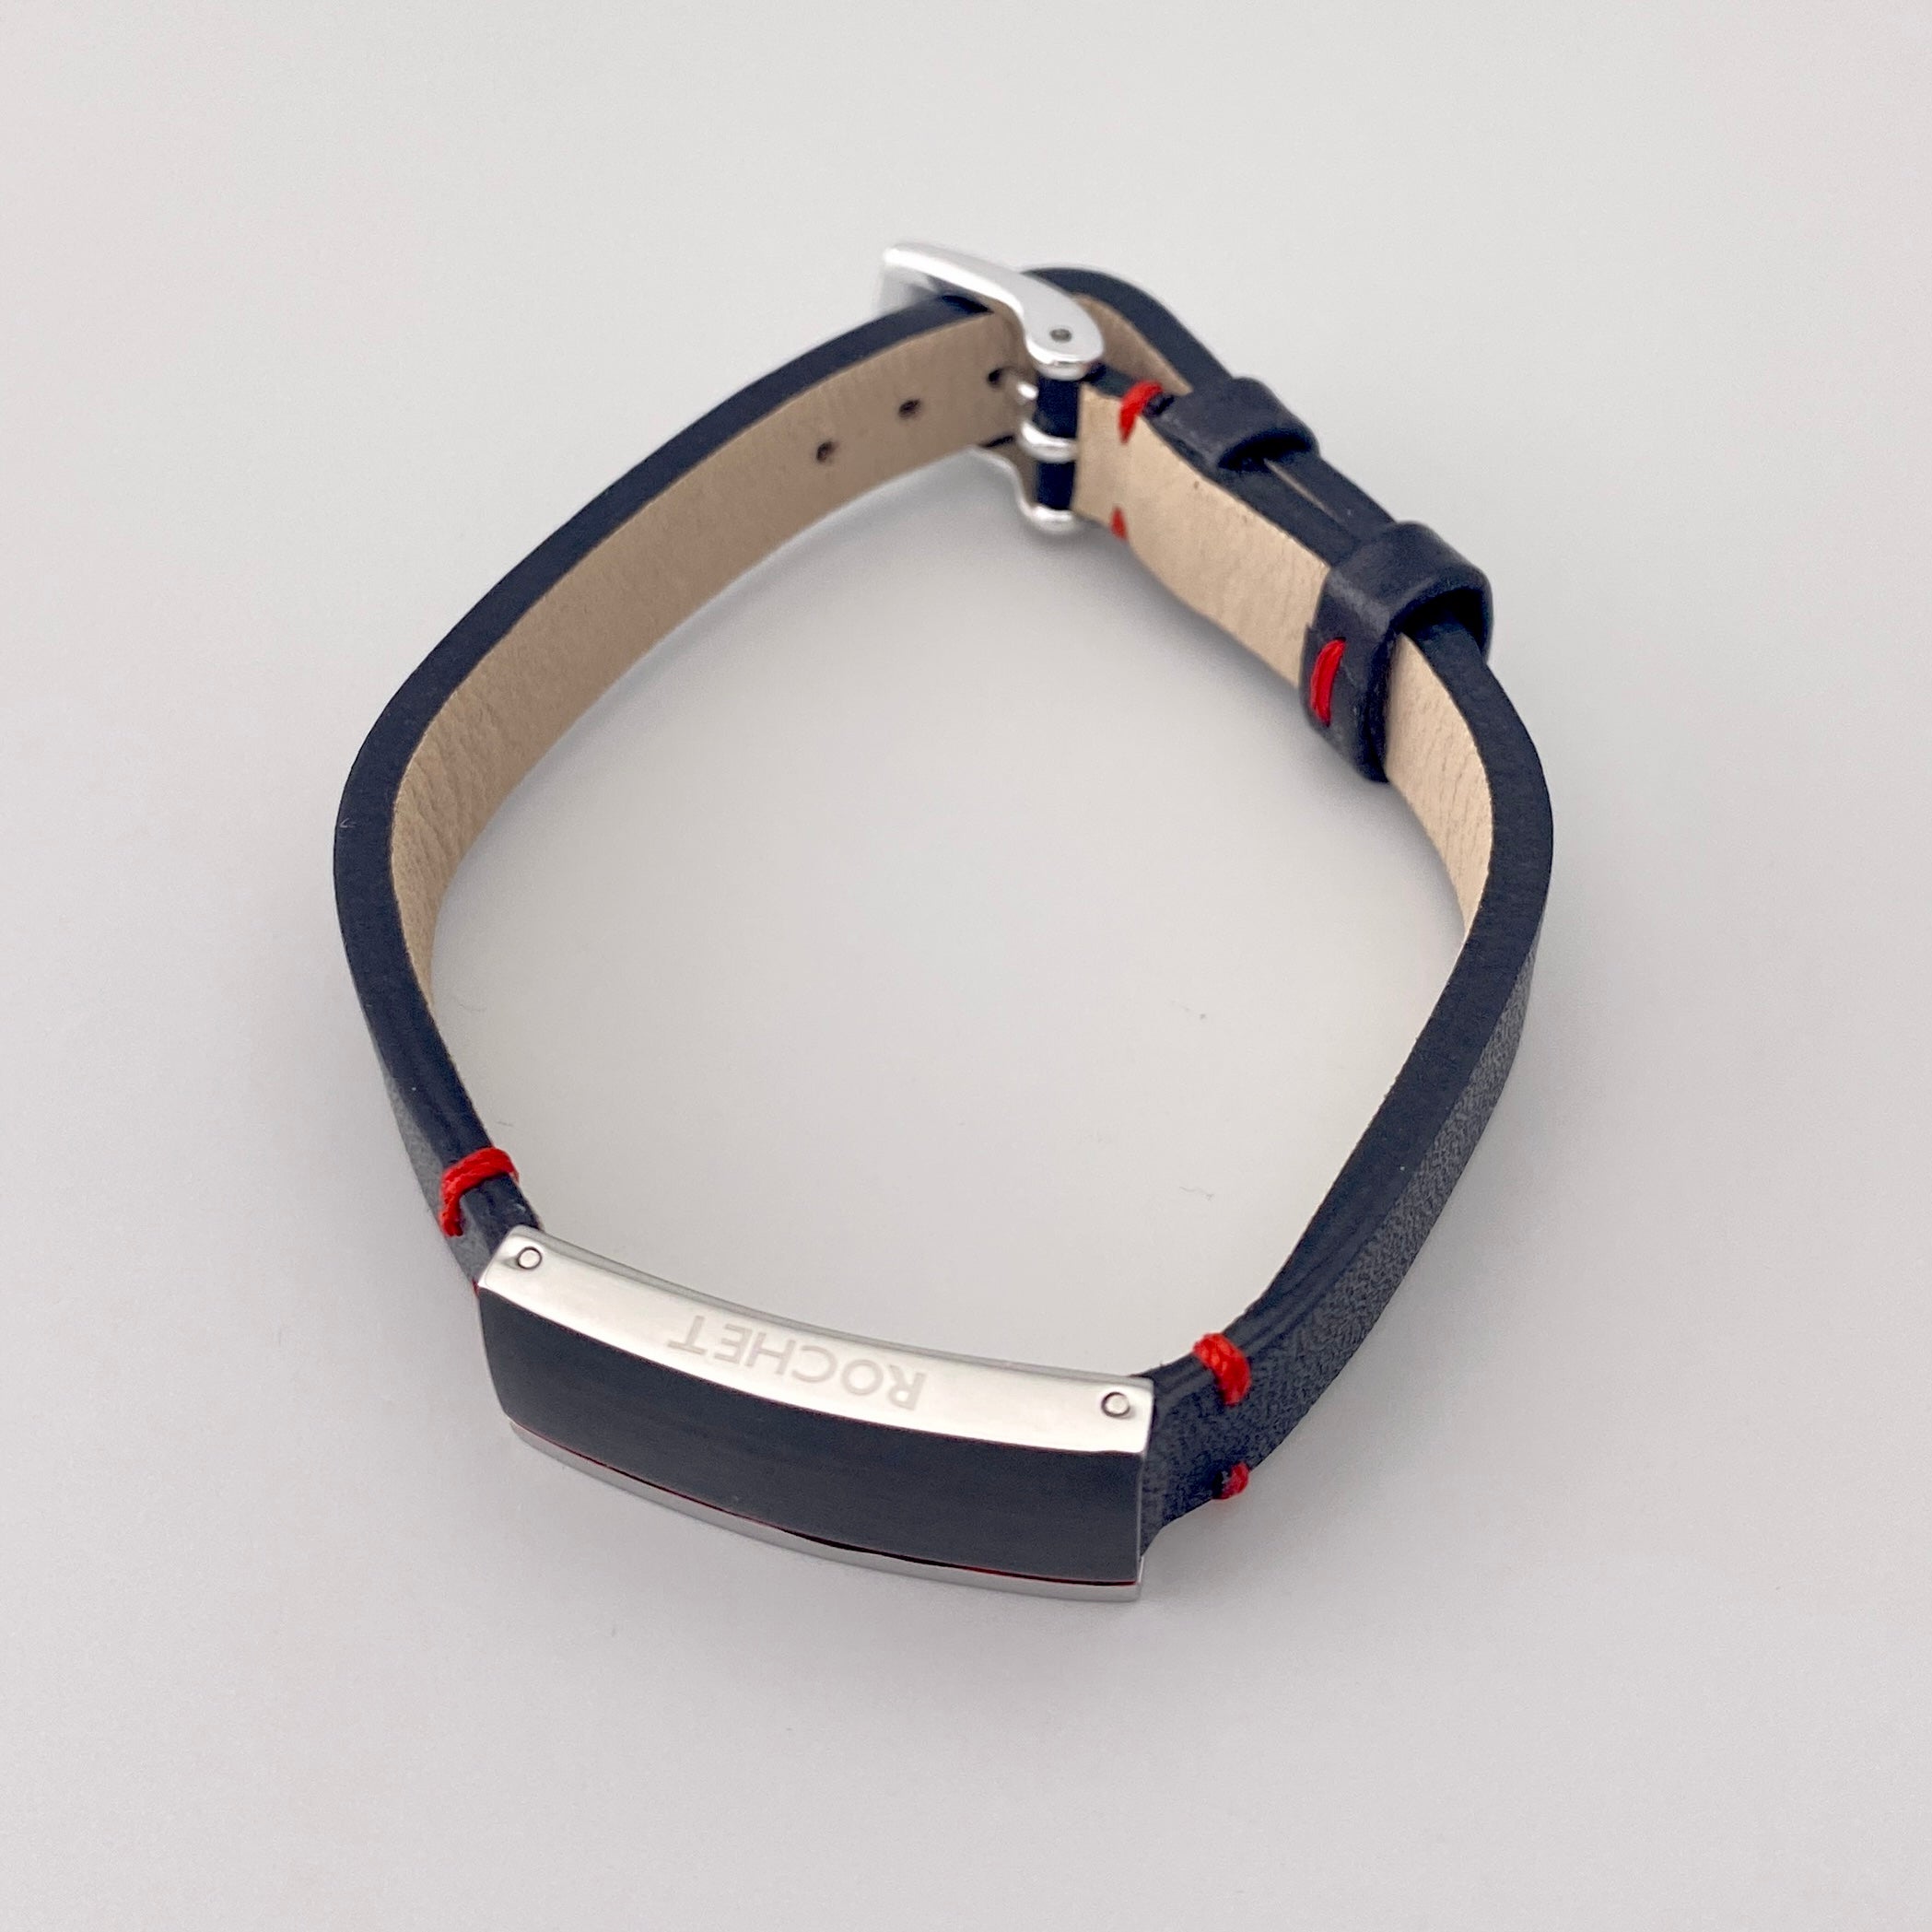 ROCHET(ZRC) “DAKOTA” Watch Leather Belts